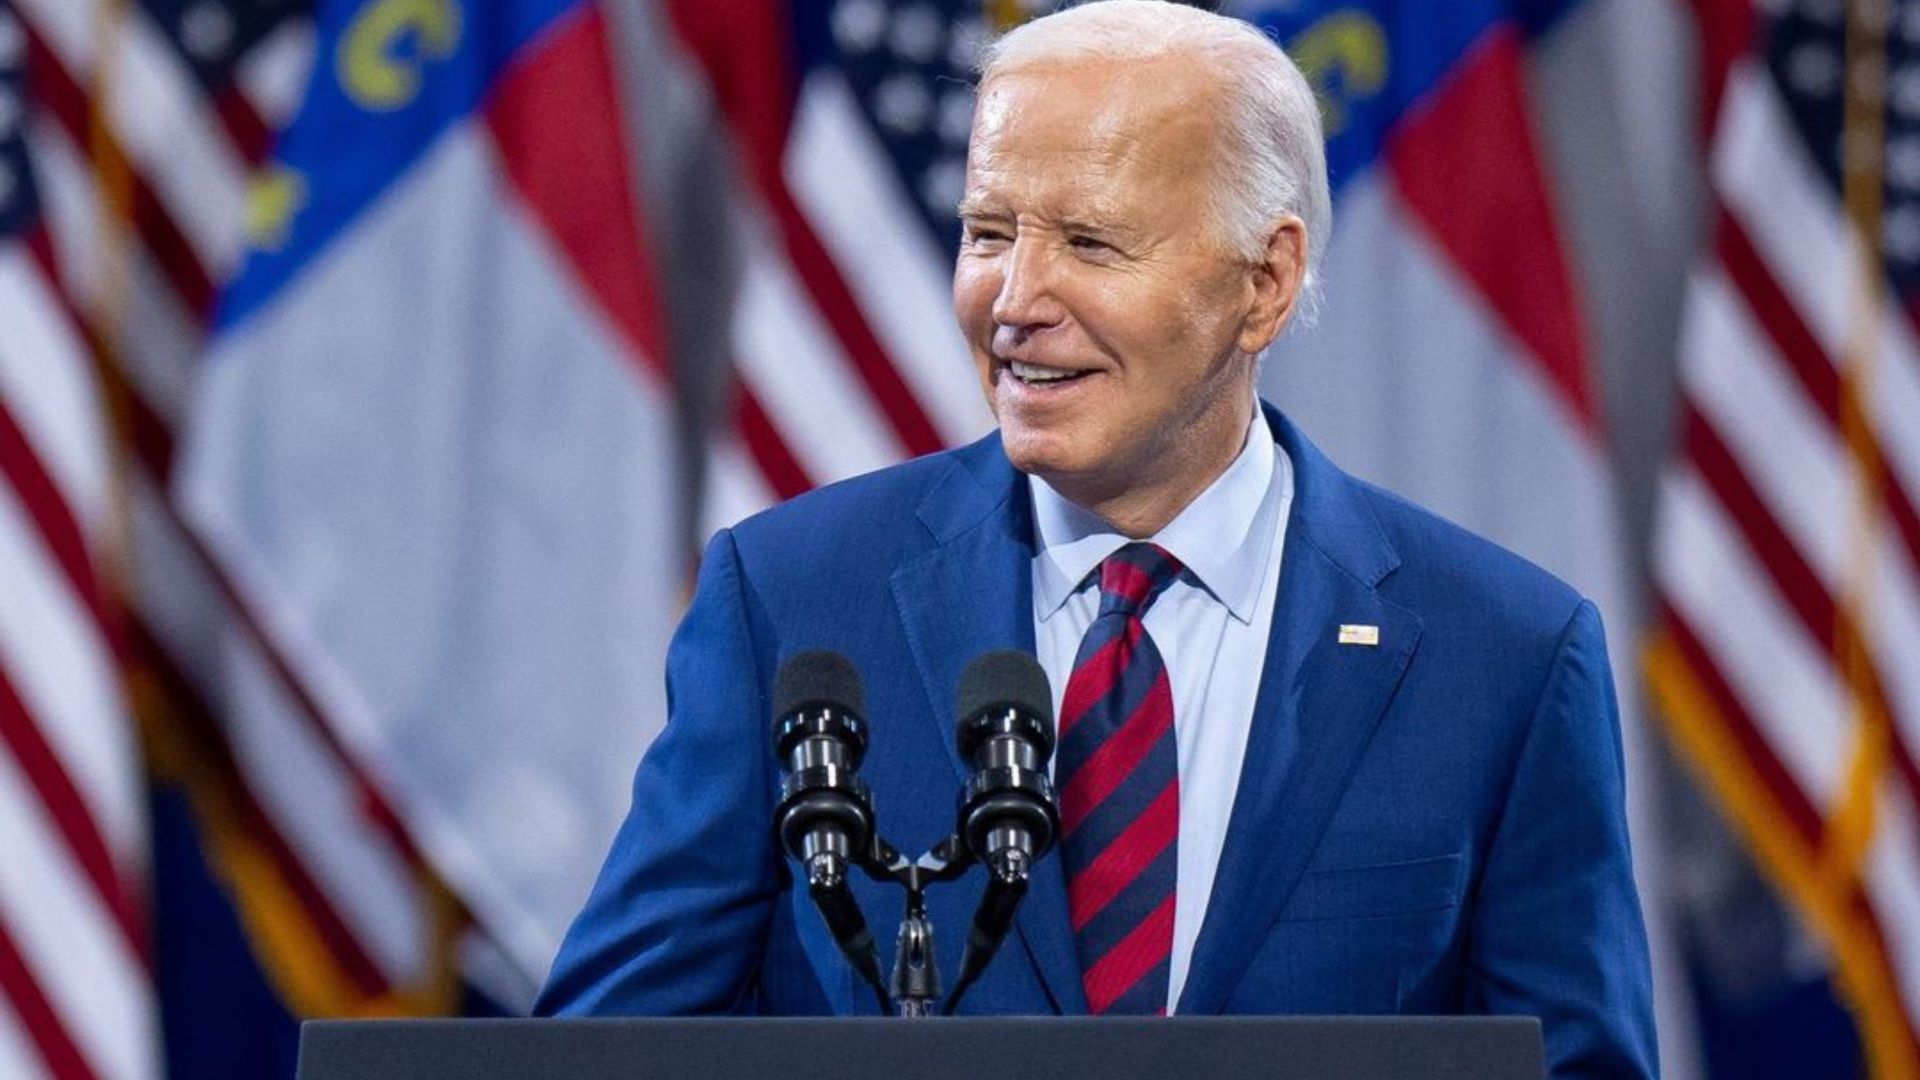 VÍDEO ninguém deveria estar preso por apenas usar ou possuir maconha, diz Biden